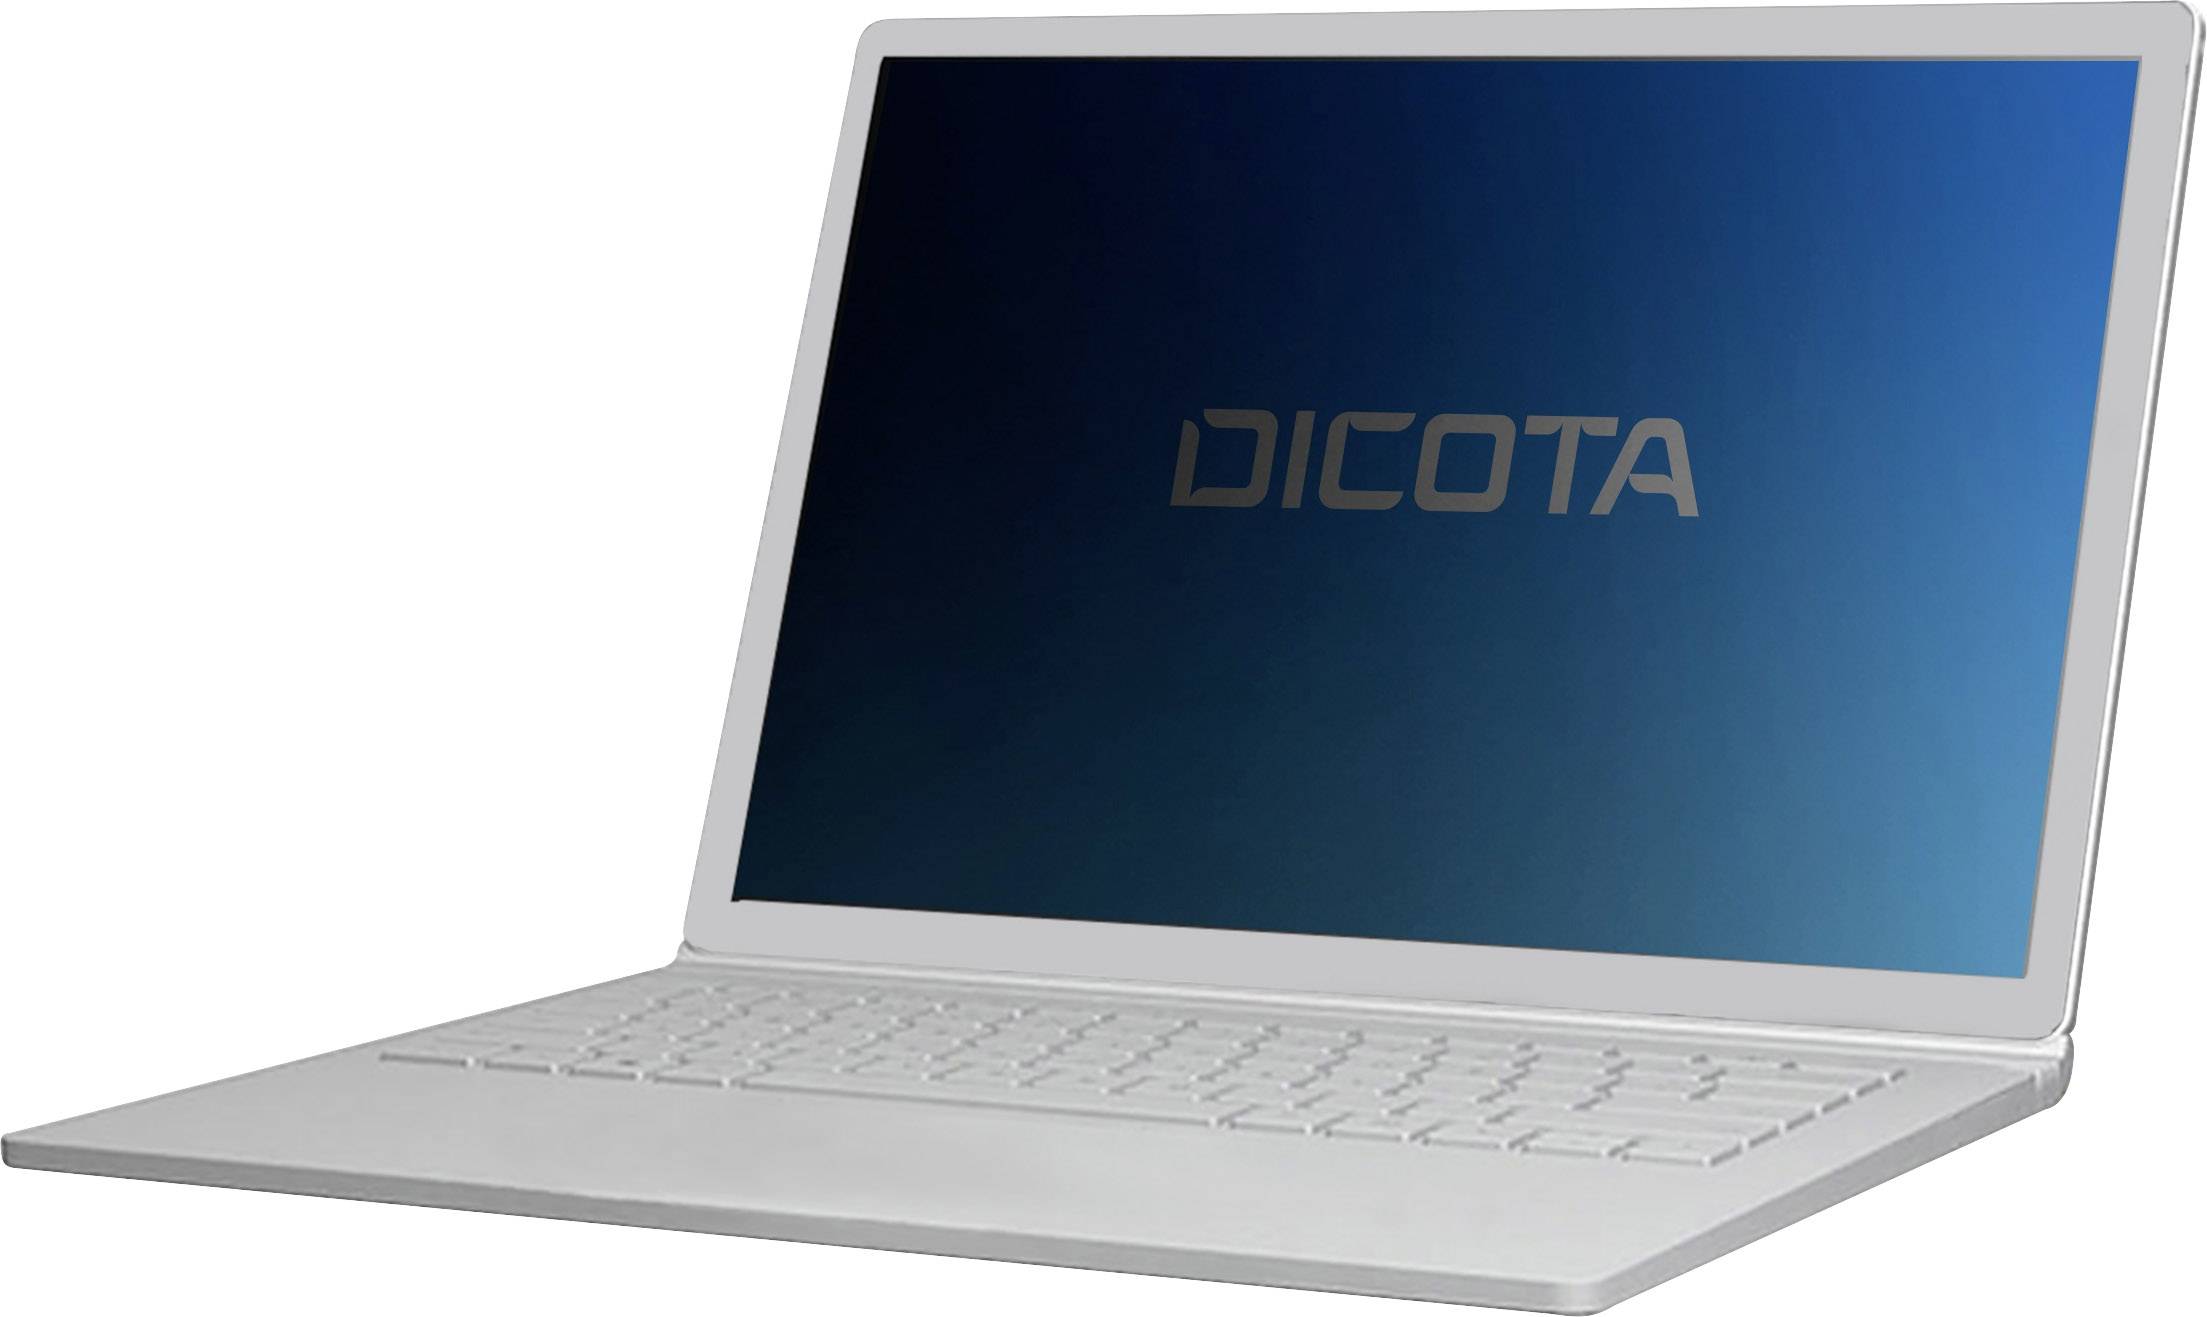 DICOTA Datenschutzfilter 2-Way für Microsoft Surface Laptop 3 13.5 seitlich montiert